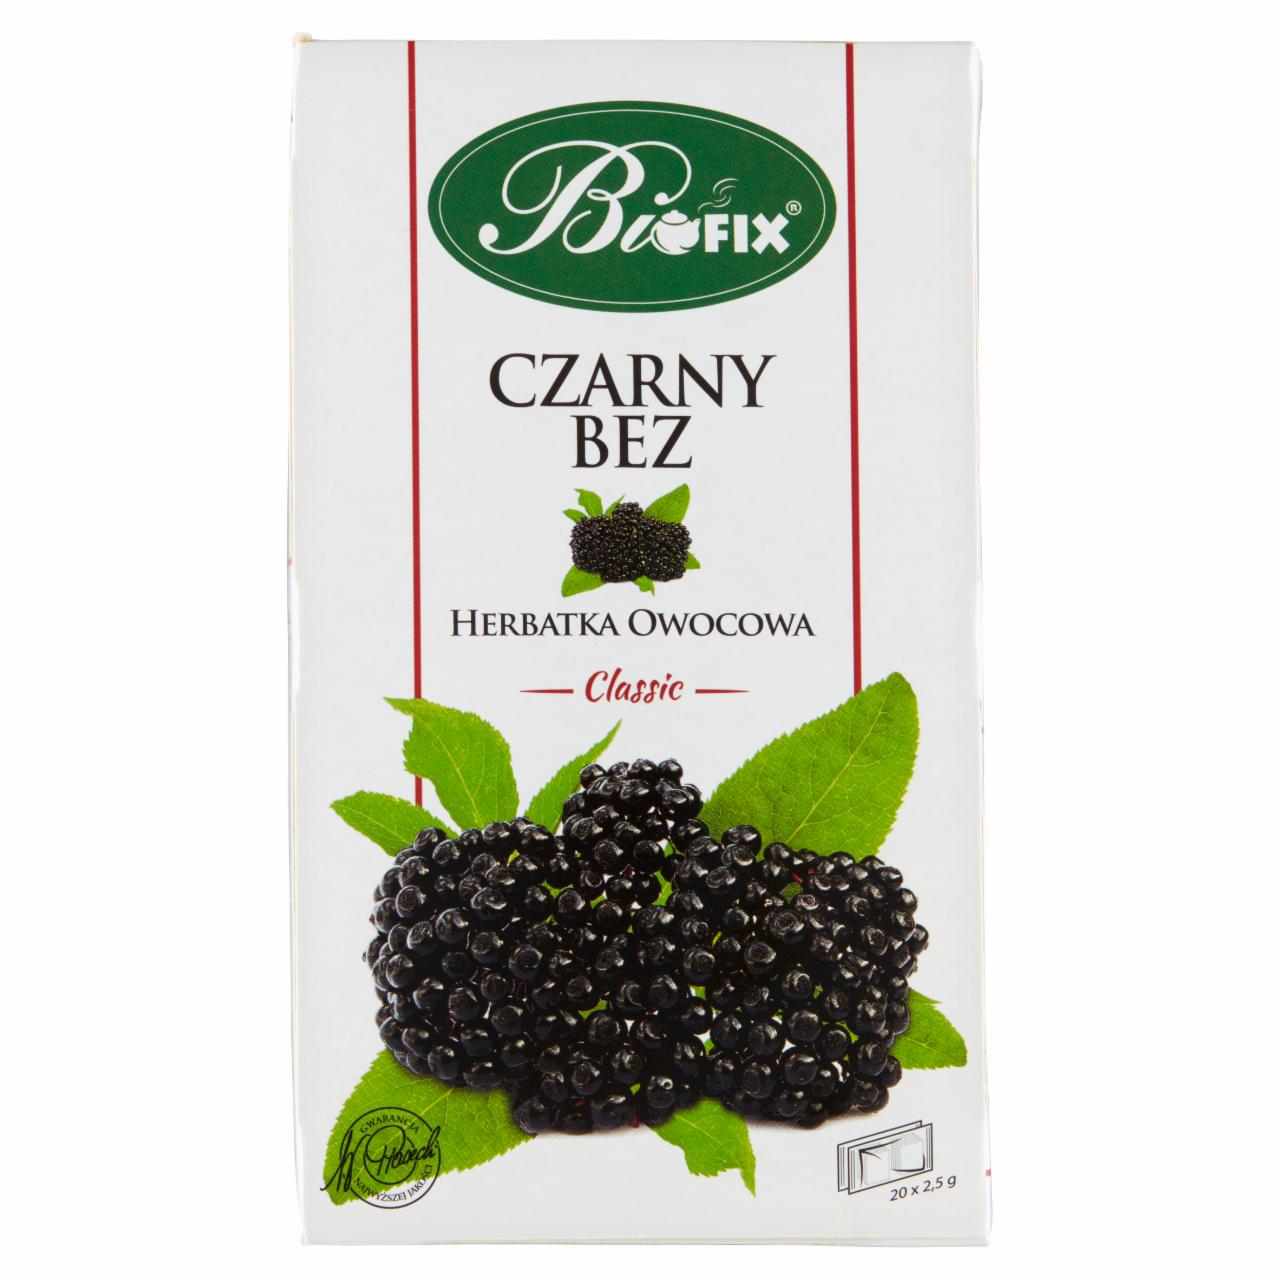 Zdjęcia - Bifix Classic Herbatka owocowa czarny bez 50 g (20 x 2,5 g)